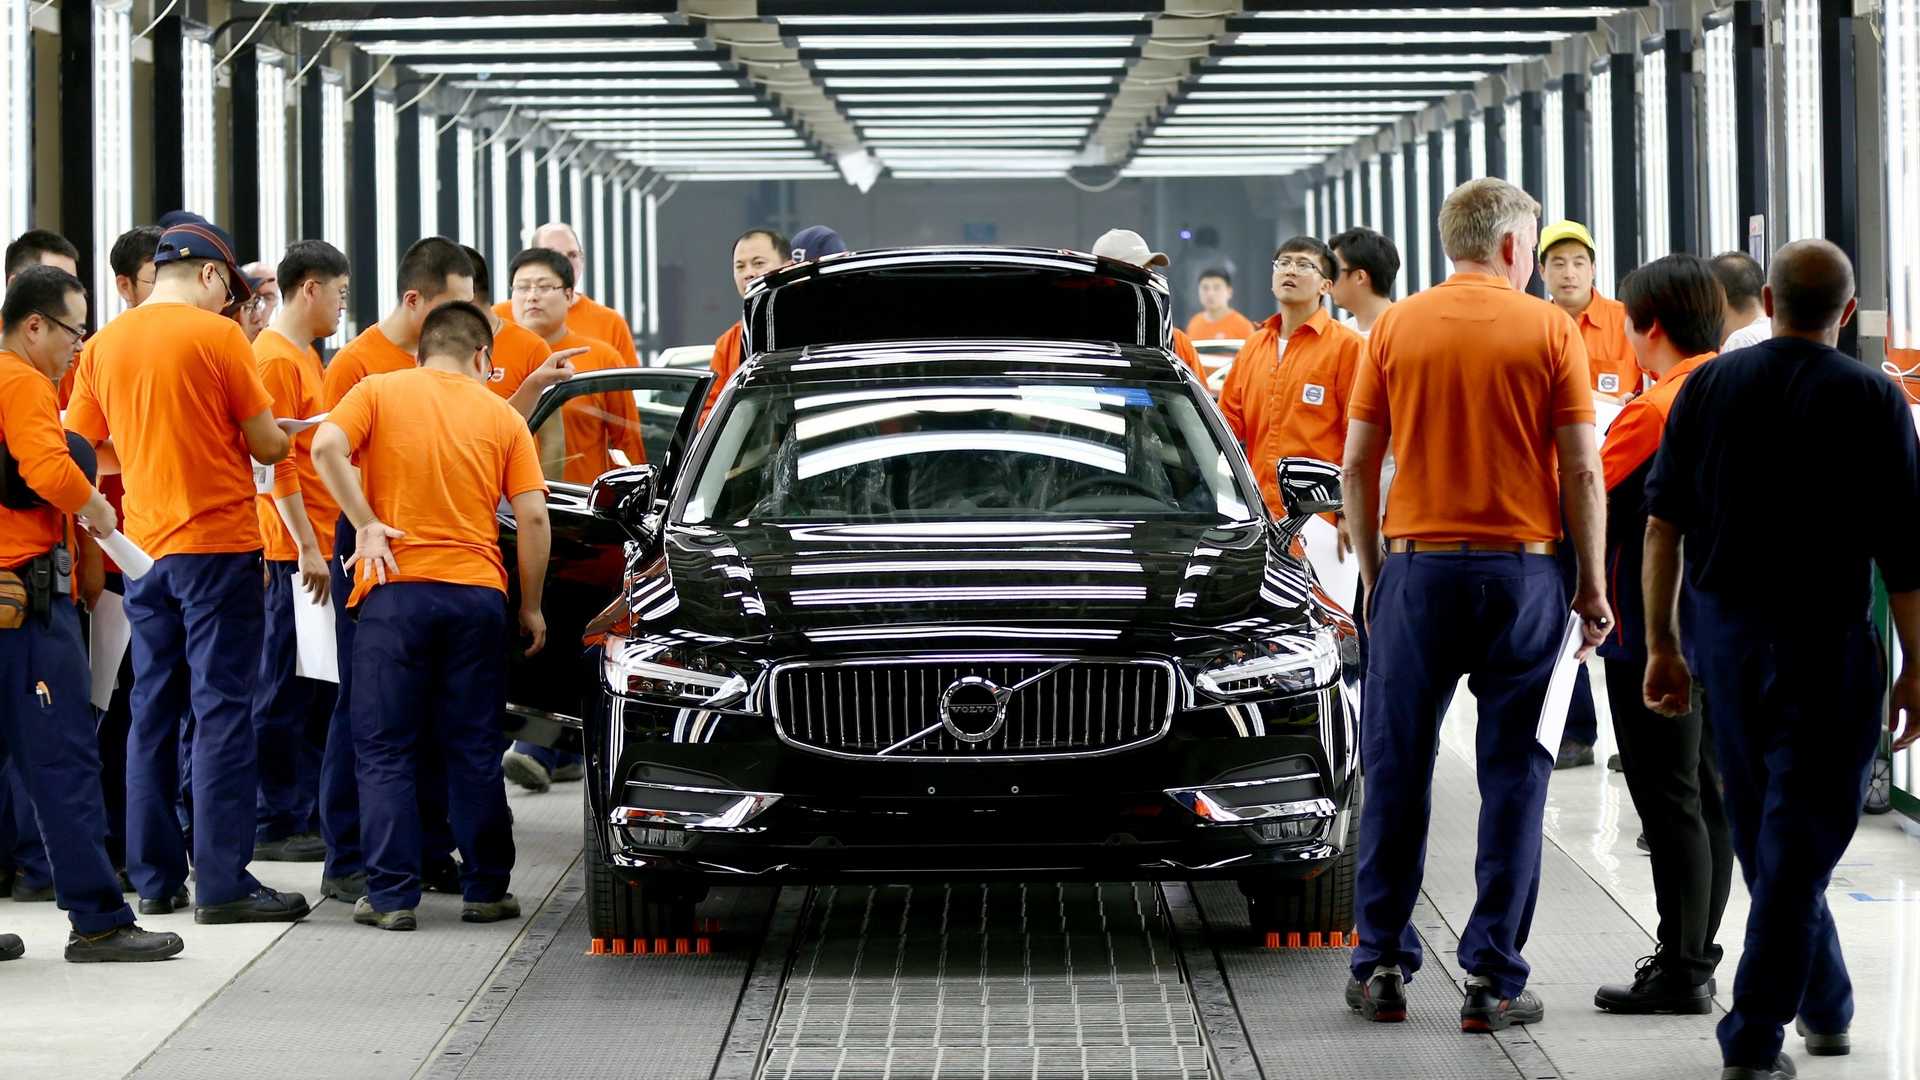 فولفو: جودة صناعة السيارات في الصين أفضل من أوروبا لهذا السبب 2